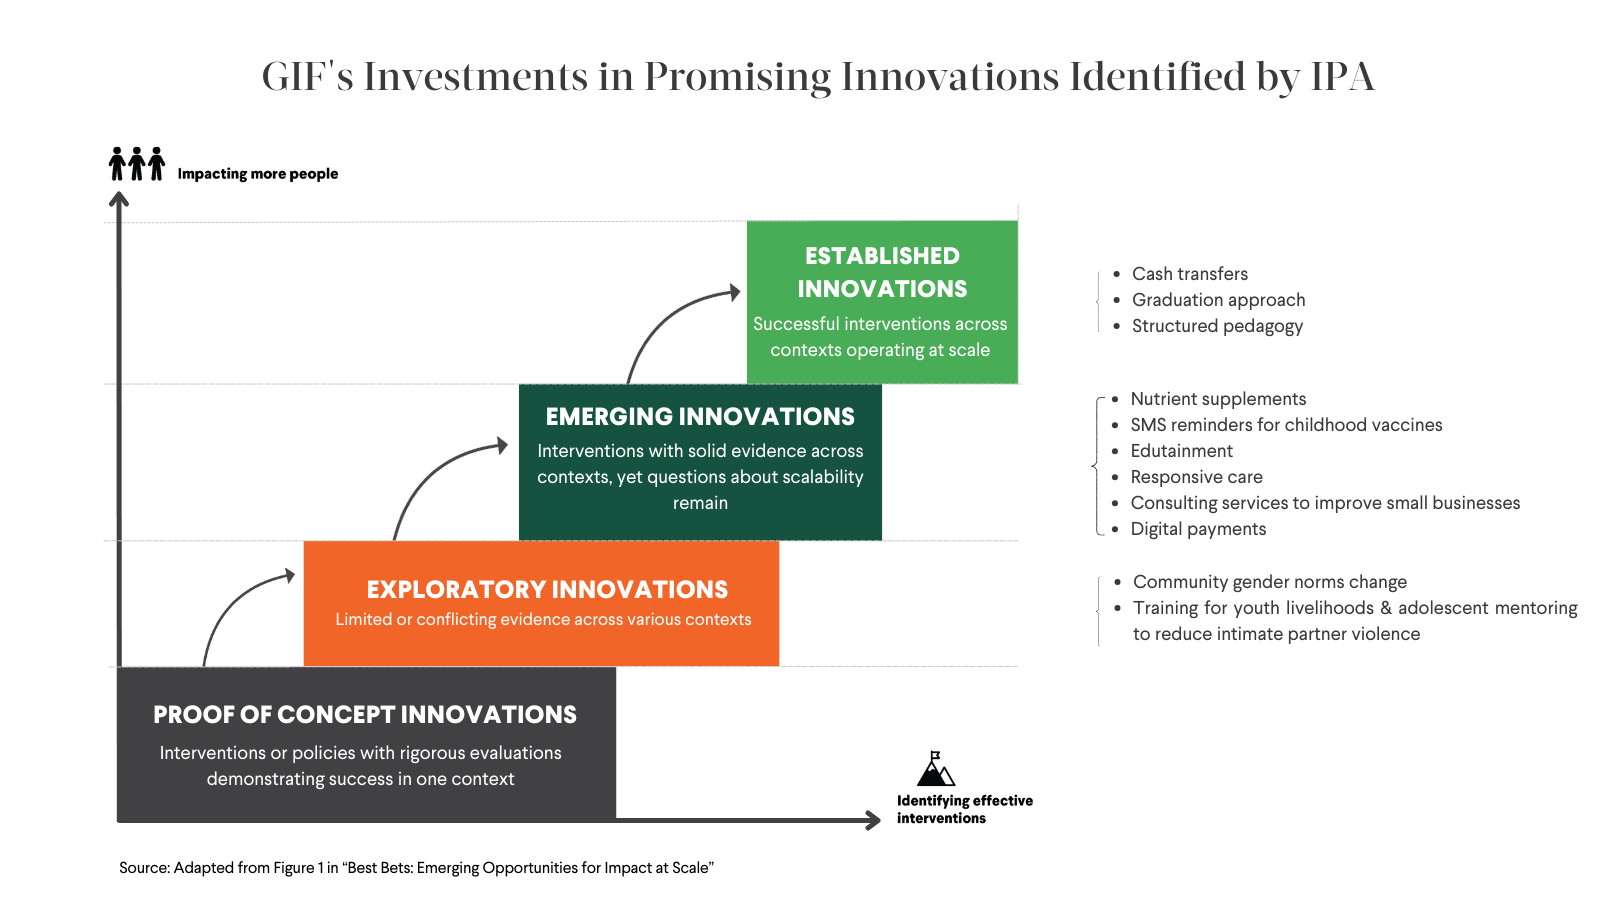 Le graphique montre l'investissement du GIF dans des innovations prometteuses identifiées par l'IPA